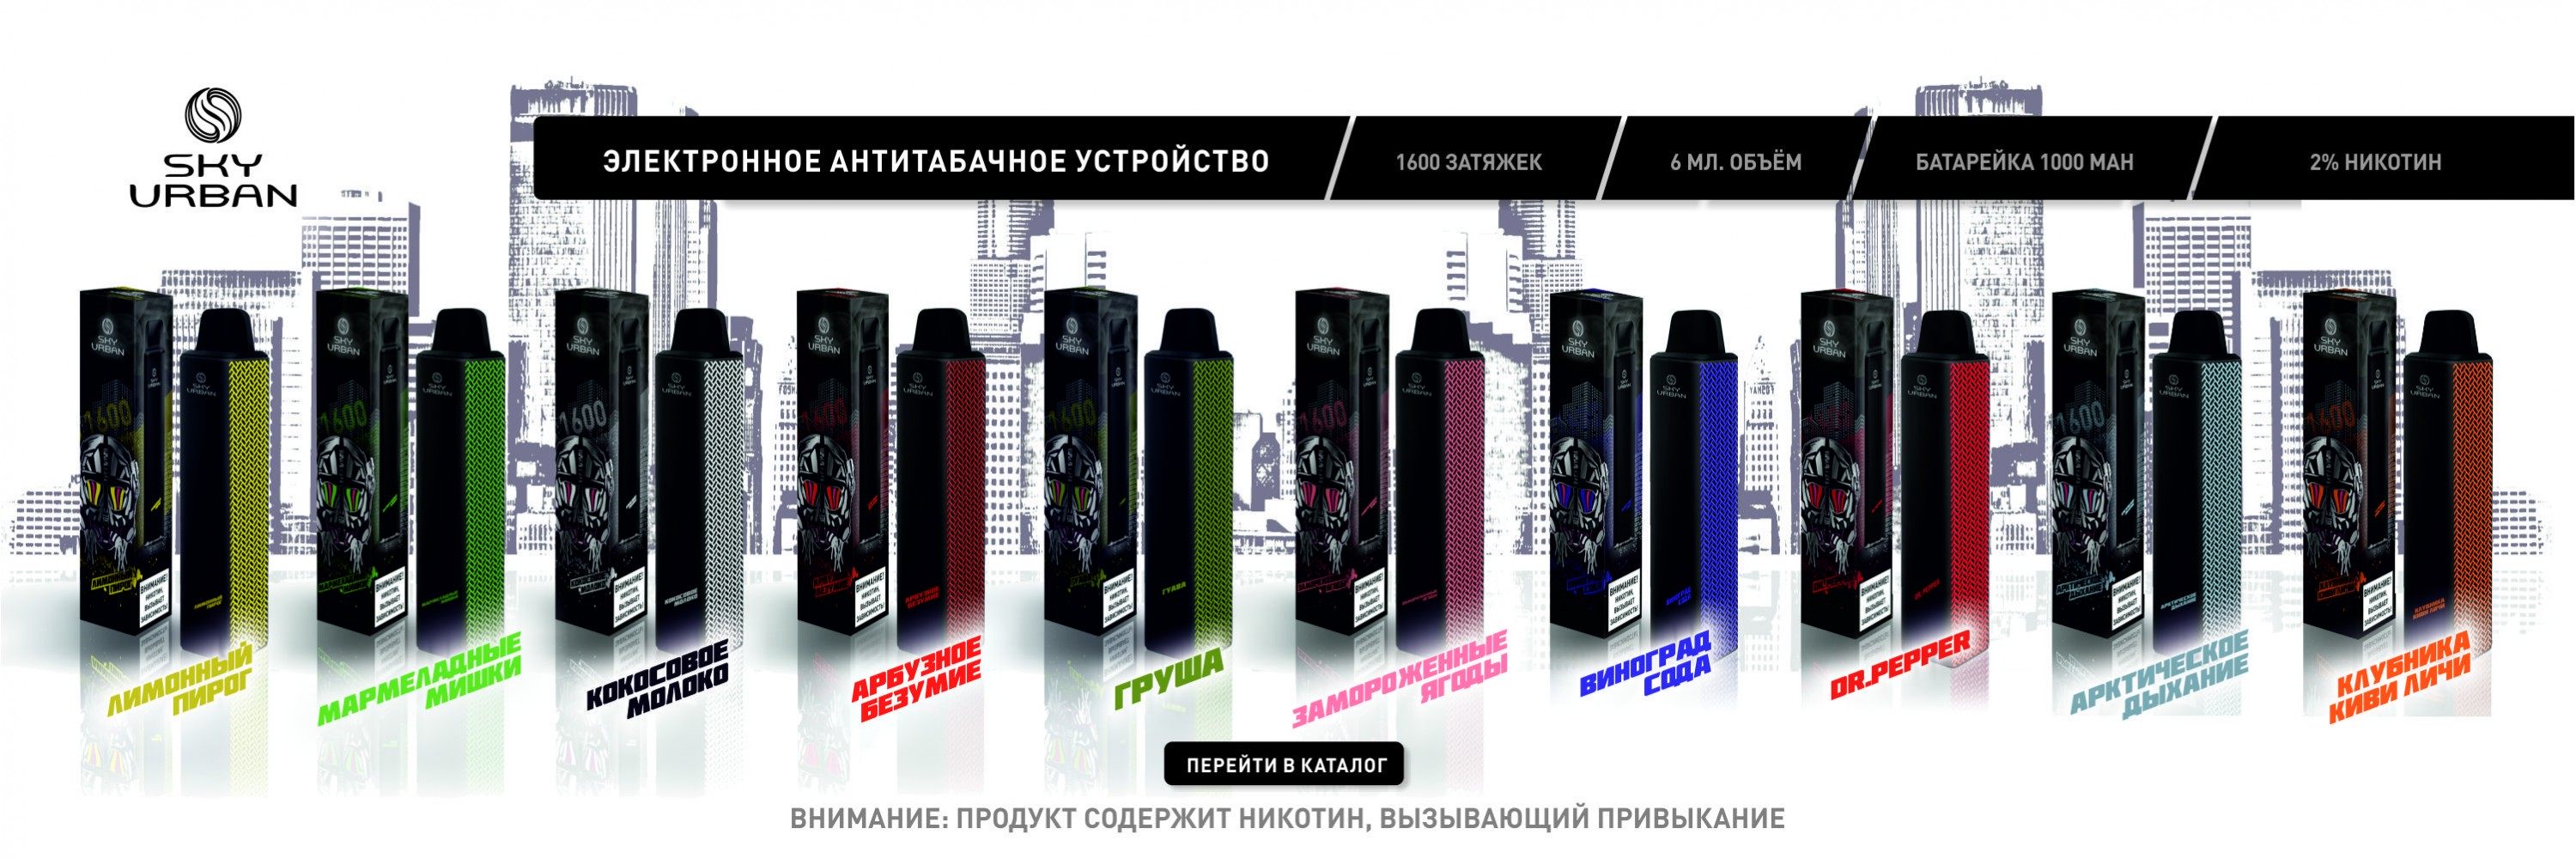 Одноразовые электронные сигареты SKY URBAN